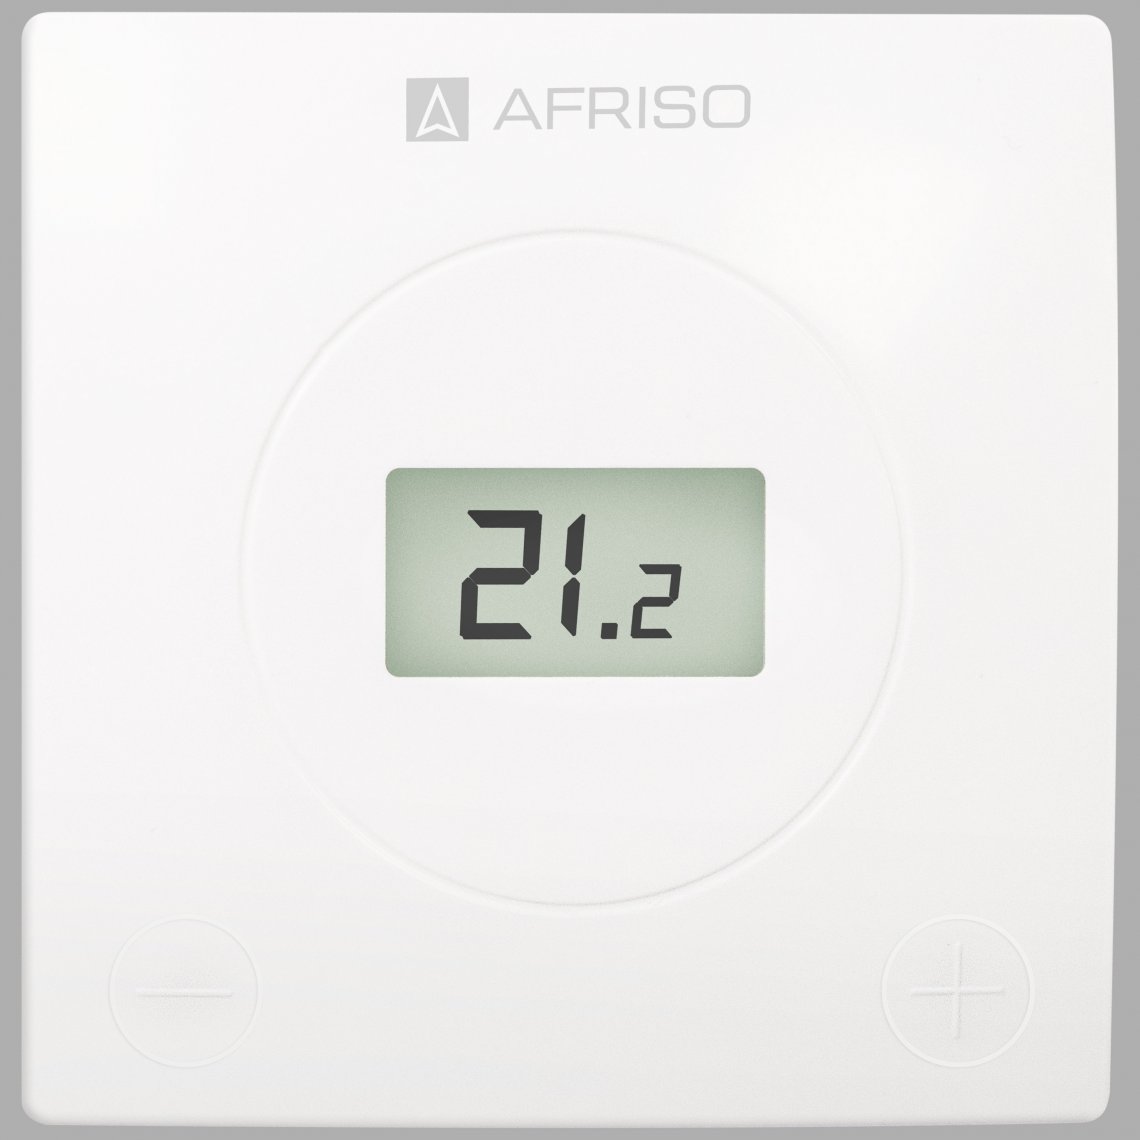 Thermostat d'ambiance digital filaire FloorControl avec mesure de température